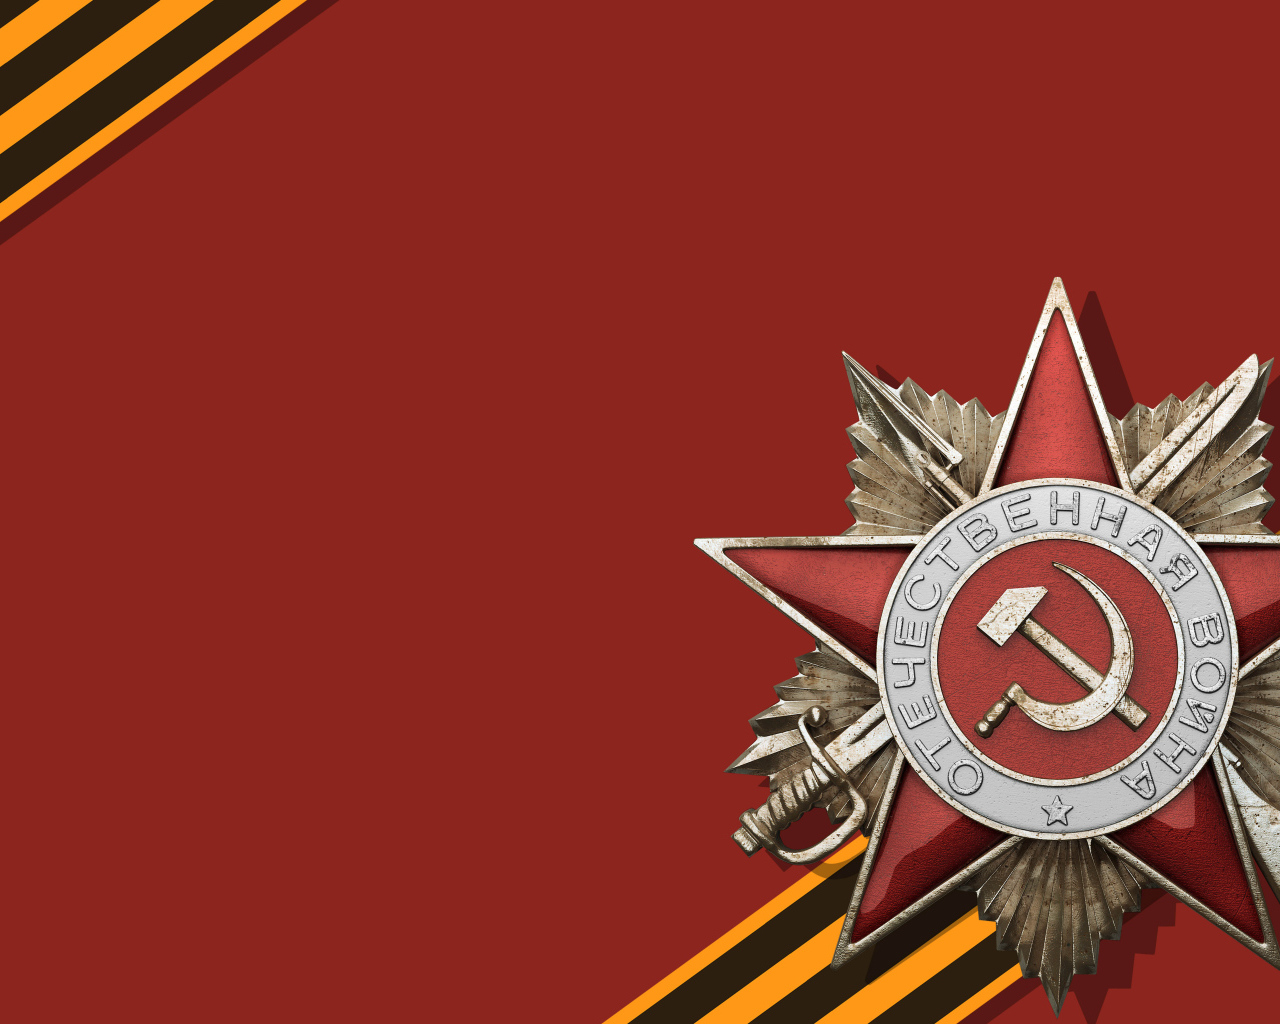 Орден и георгиевская лента в День Победы 9 мая